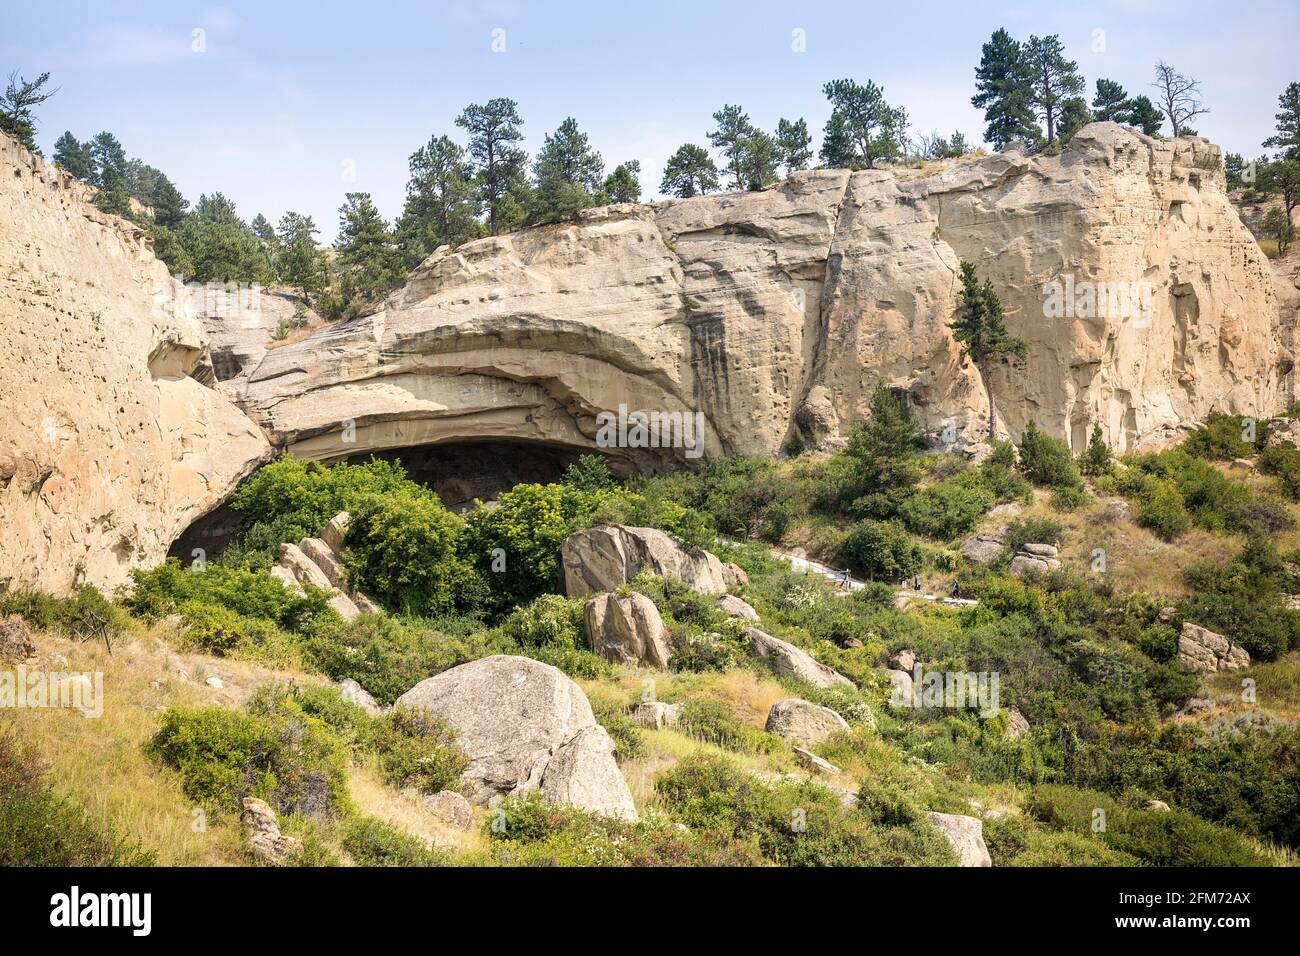 Grotte principale Pictograph Cave, parc national, Billings, Montana, États-Unis Banque D'Images